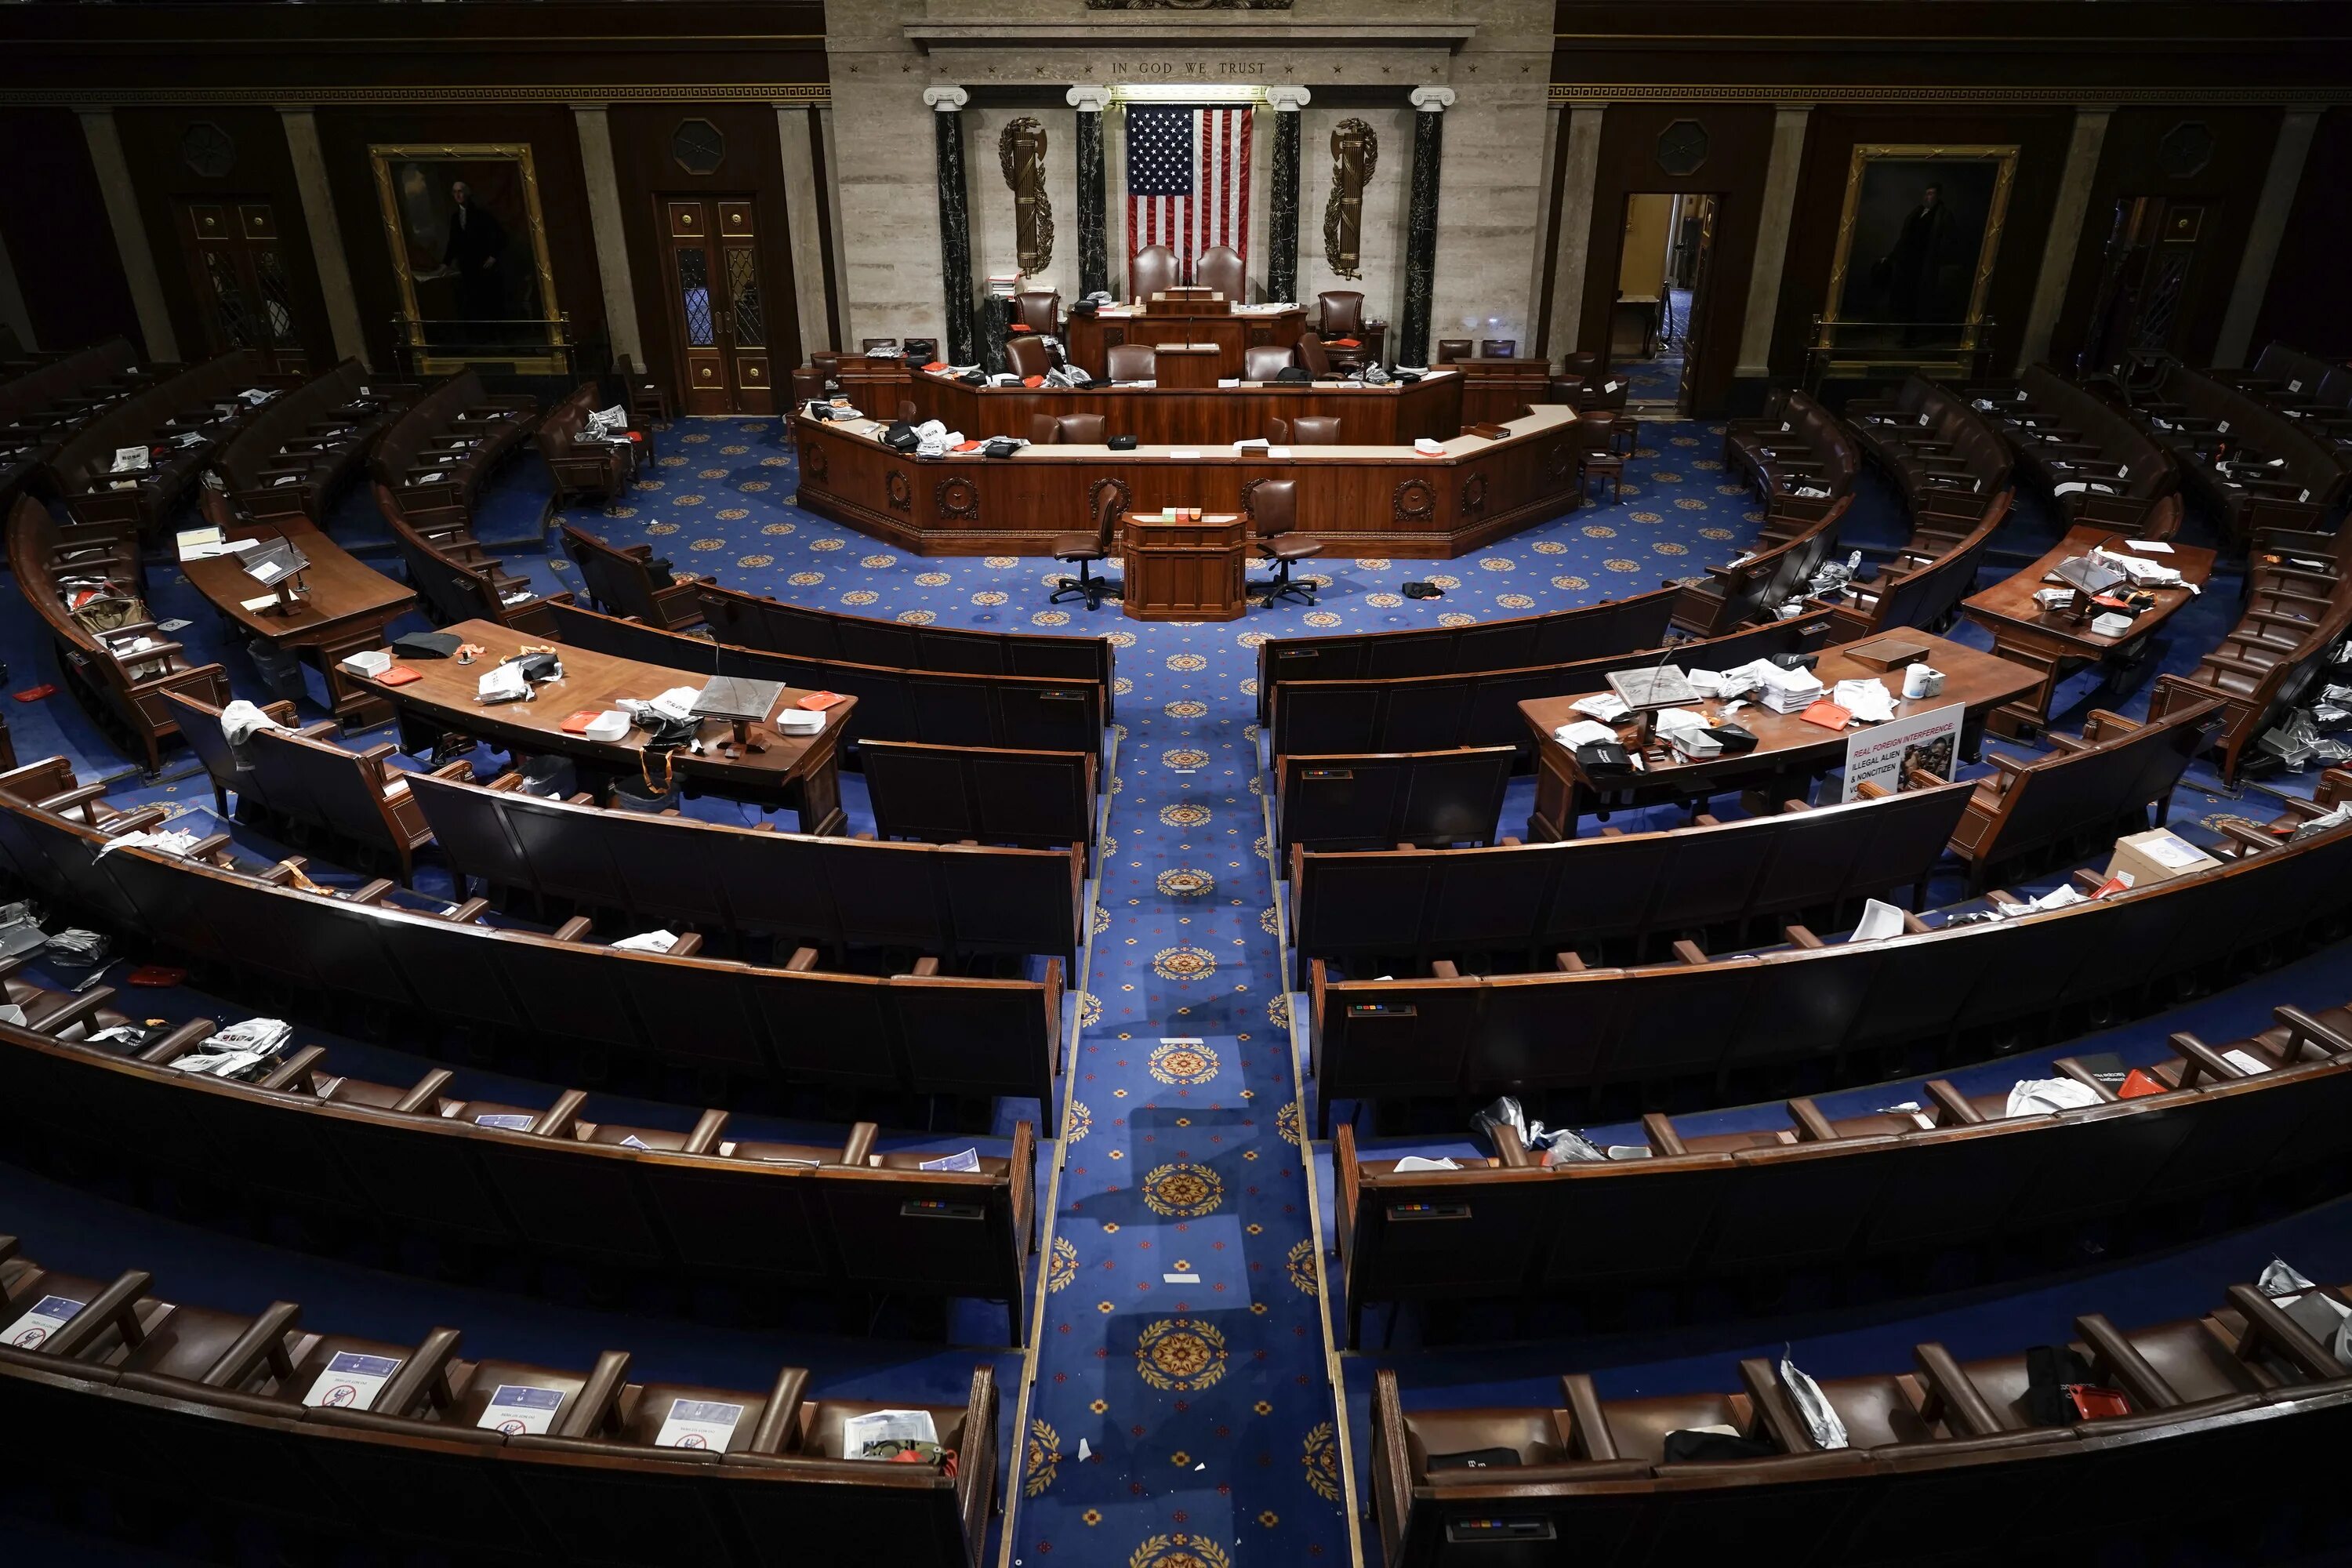 Сенат США. Сенат конгресса США. Конгресс США Сенат и палата представителей. Зал заседаний Сената США.